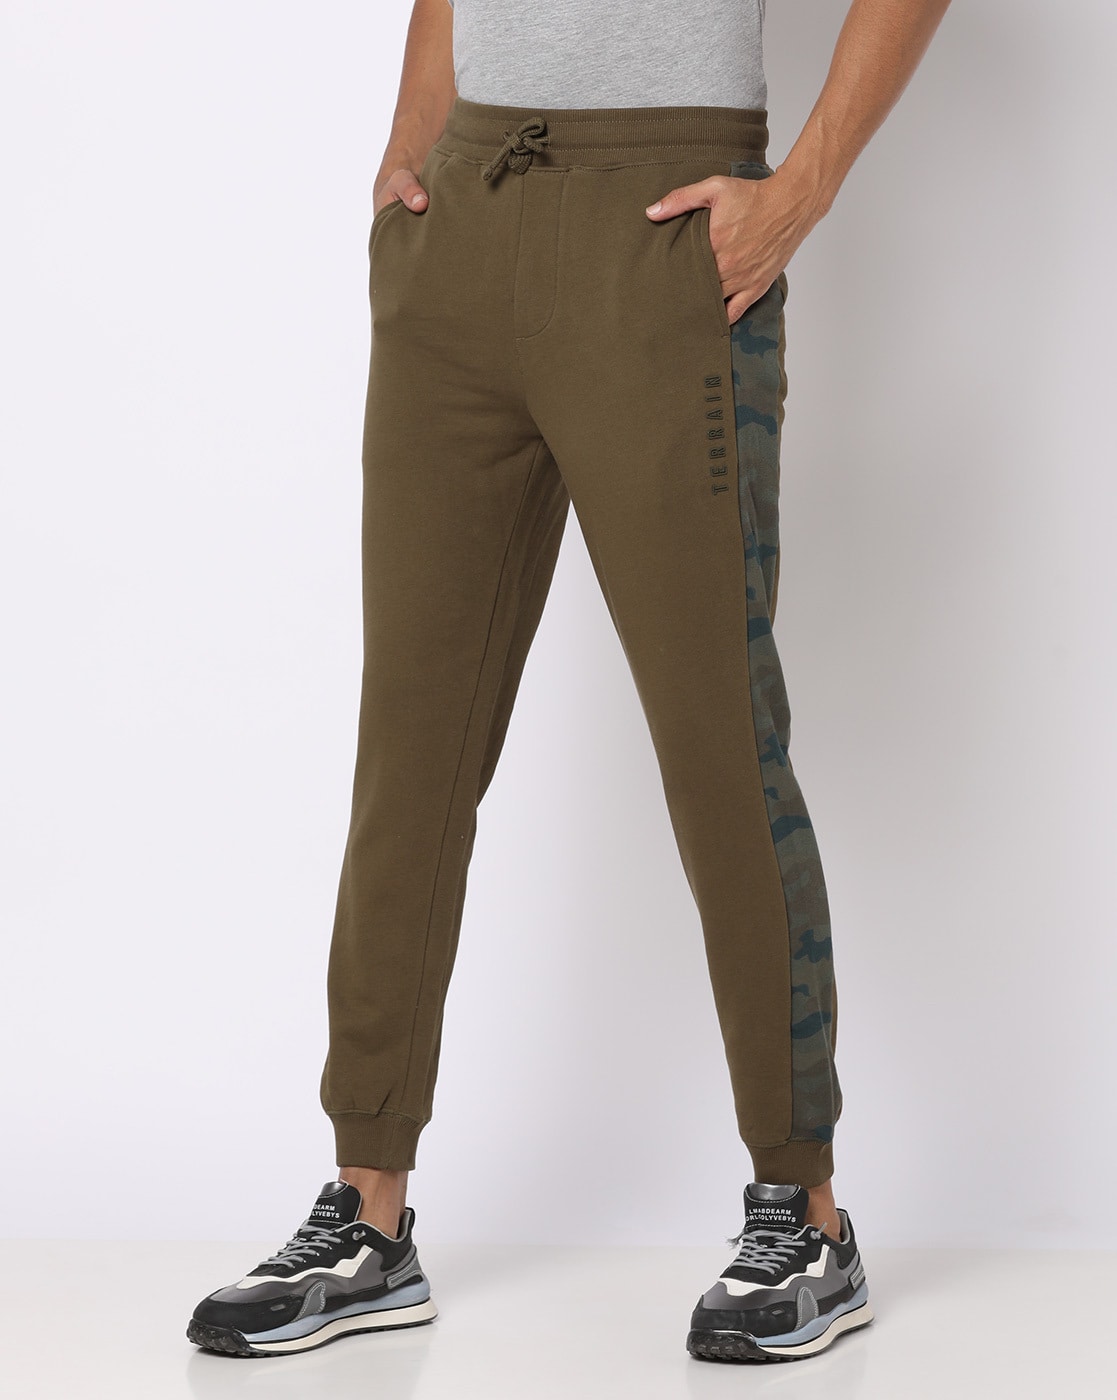 Buy Blue Track Pants for Men by The Indian Garage Co Online  Ajiocom